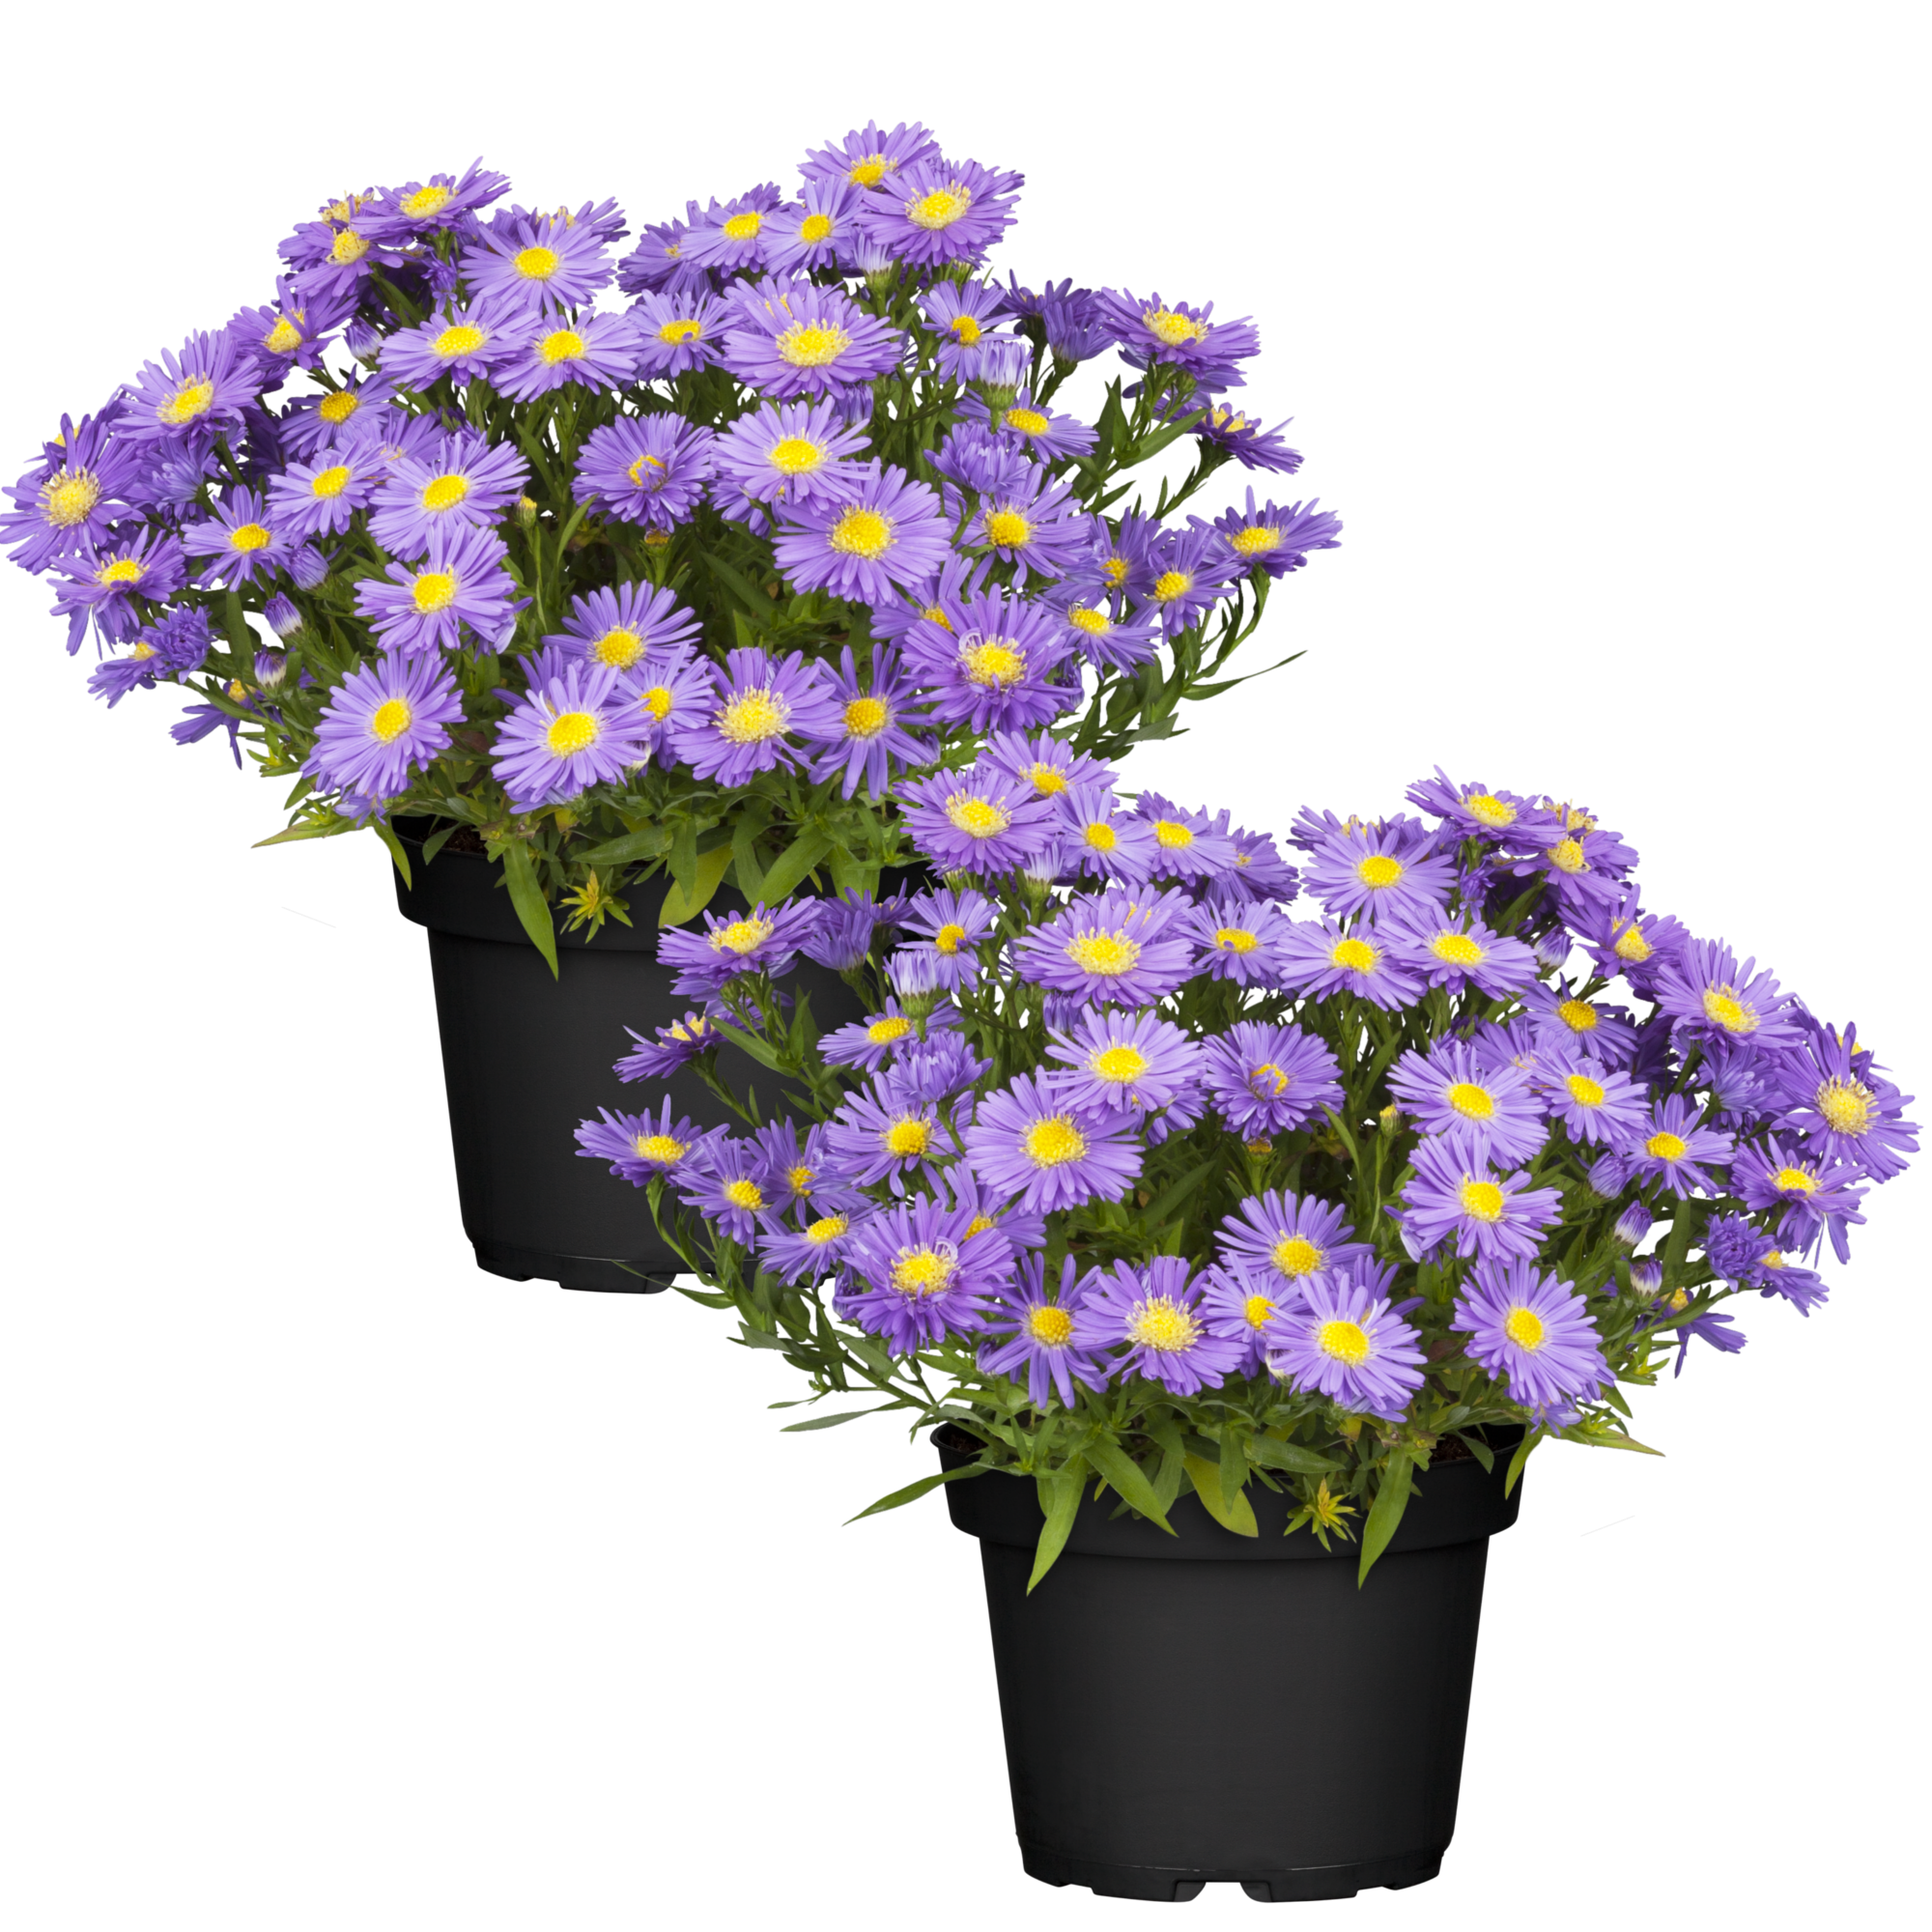 Herbstaster violett 13 cm Topf, 2er-Set + product picture